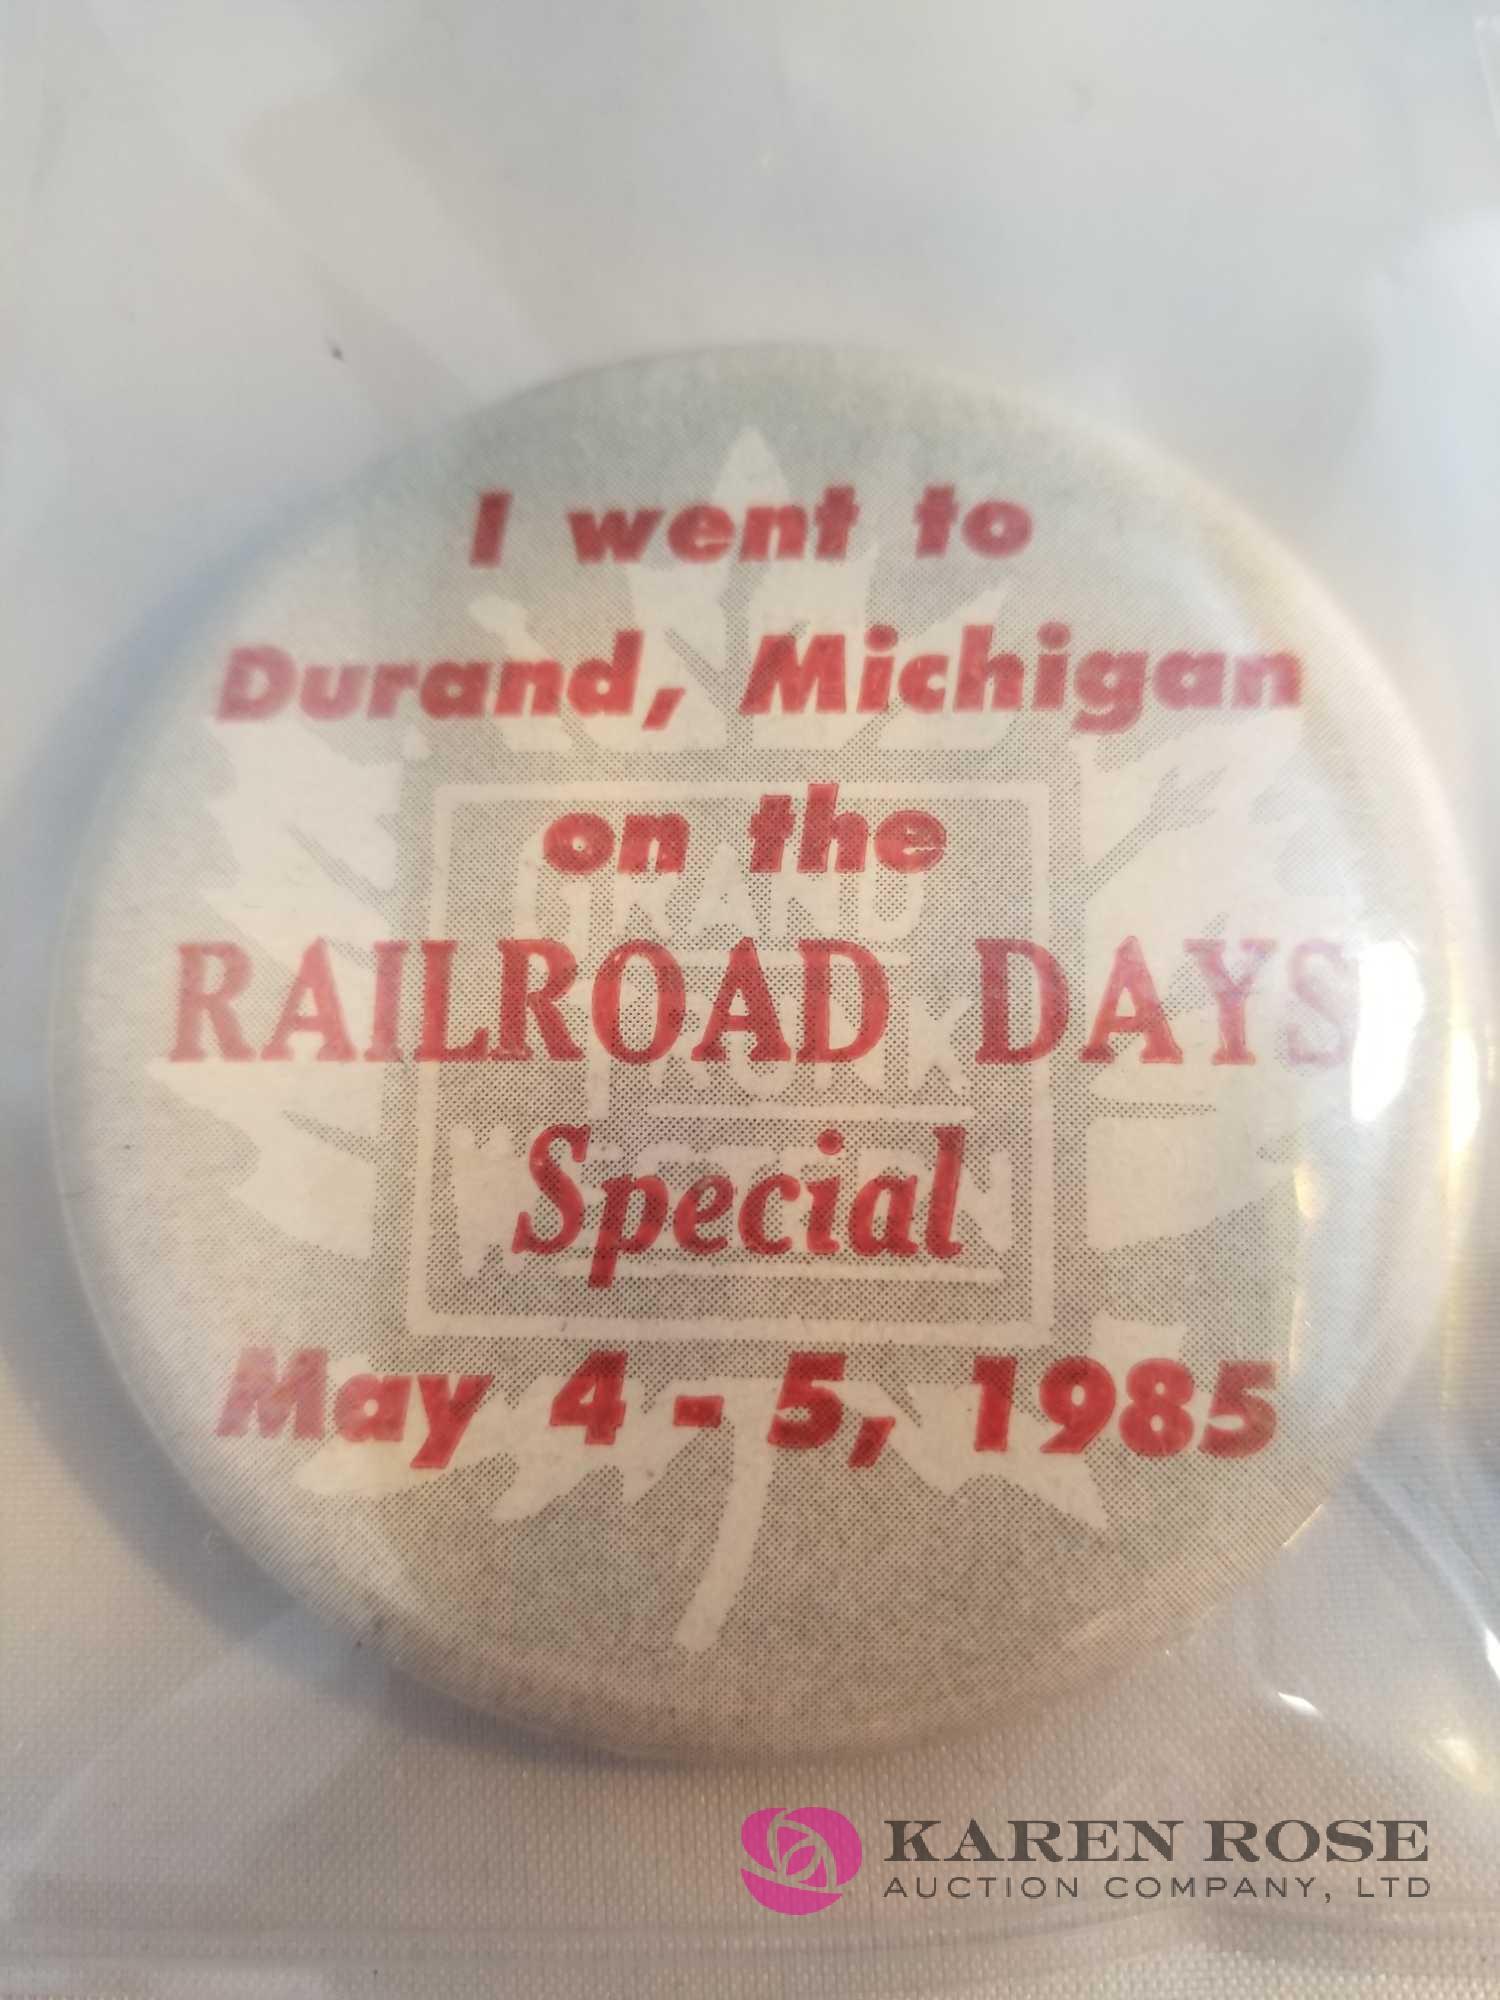 Railroad Badges